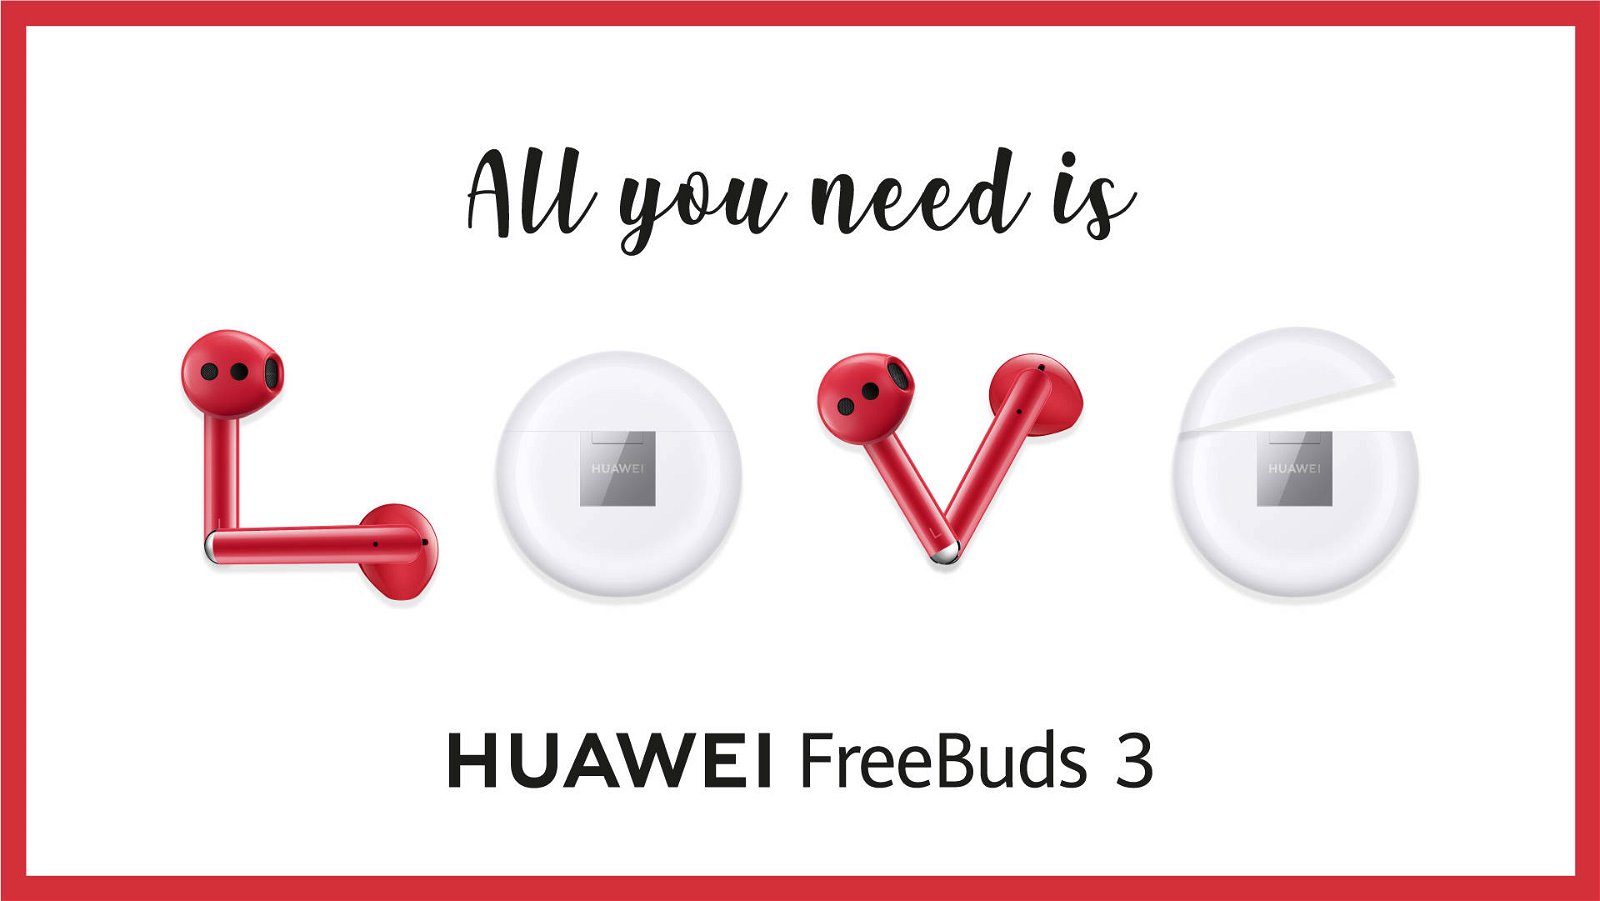 Immagine di Huawei, FreeBuds 3 e Watch GT 2 protagonisti della nuova promozione dedicata a San Valentino